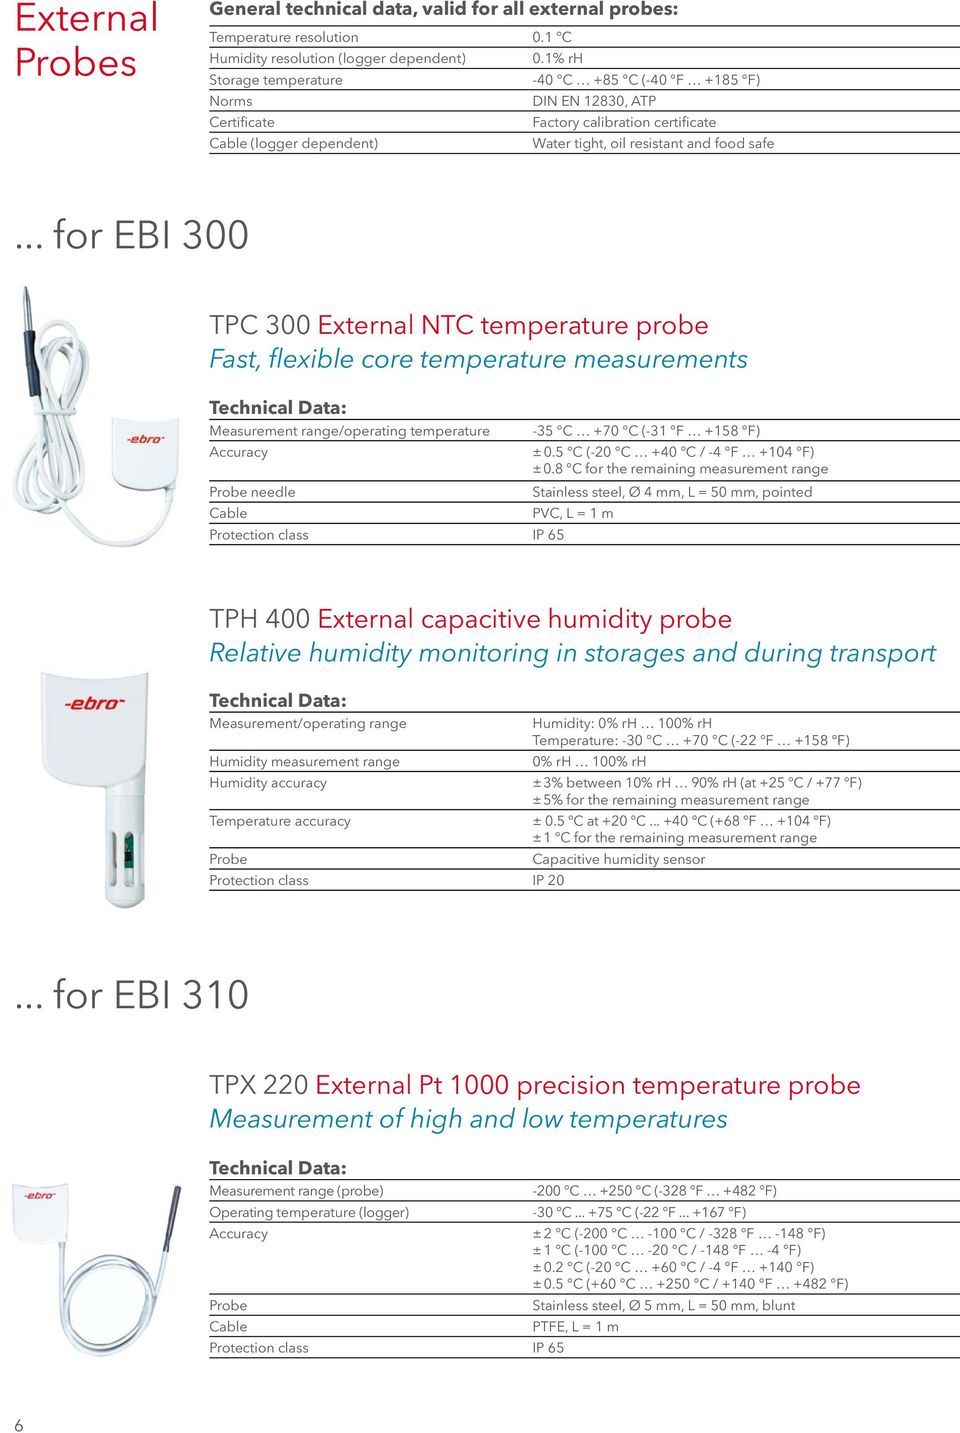 .. for EBI 300 TPC 300 External NTC temperature probe Fast, flexible core temperature measurements Measurement range/operating temperature Probe needle Cable -35 C +70 C (-31 F +158 F) ± 0.